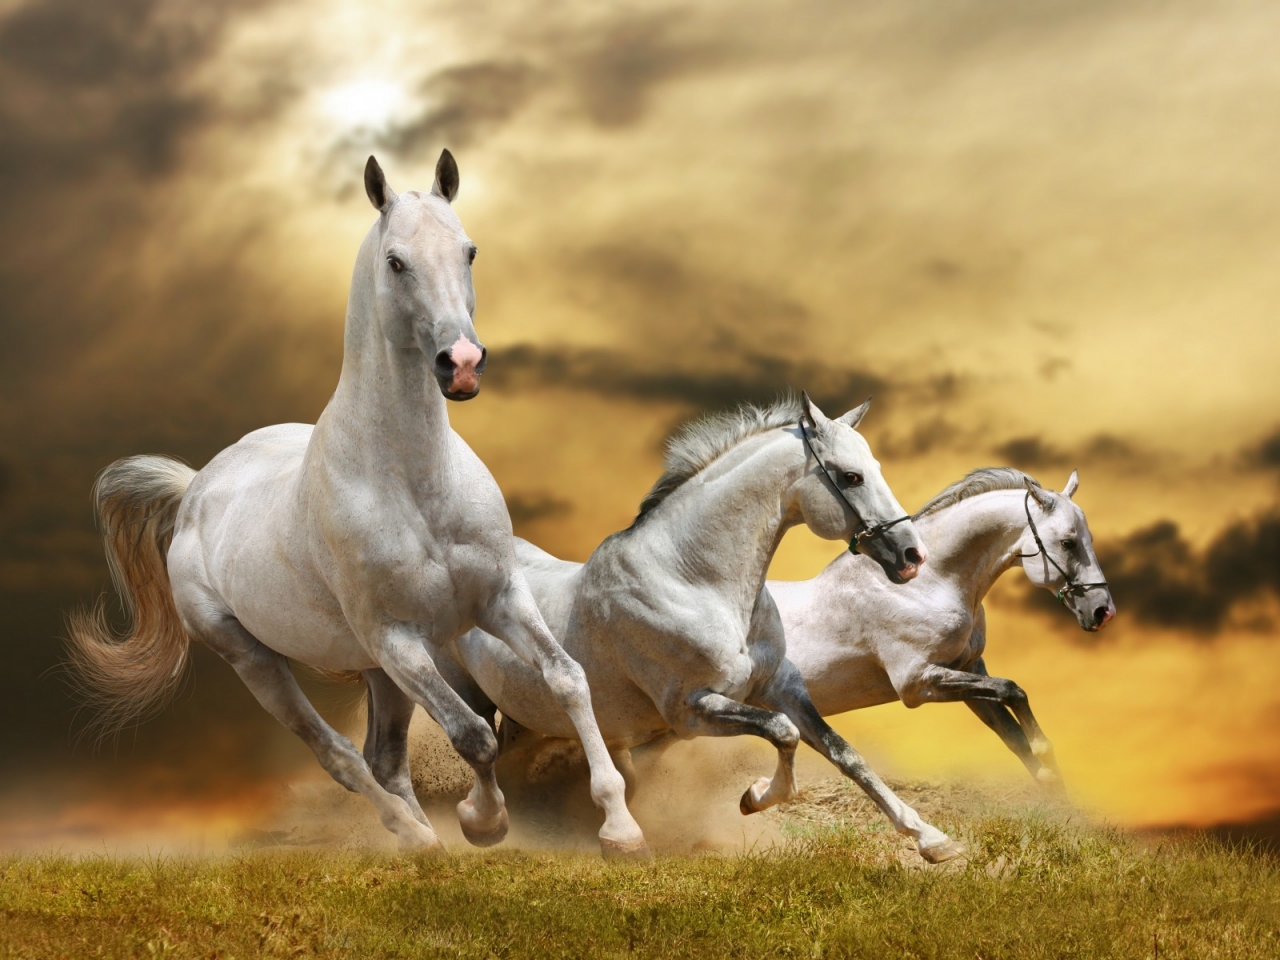 Wilde White Horses for 1280 x 960 resolution